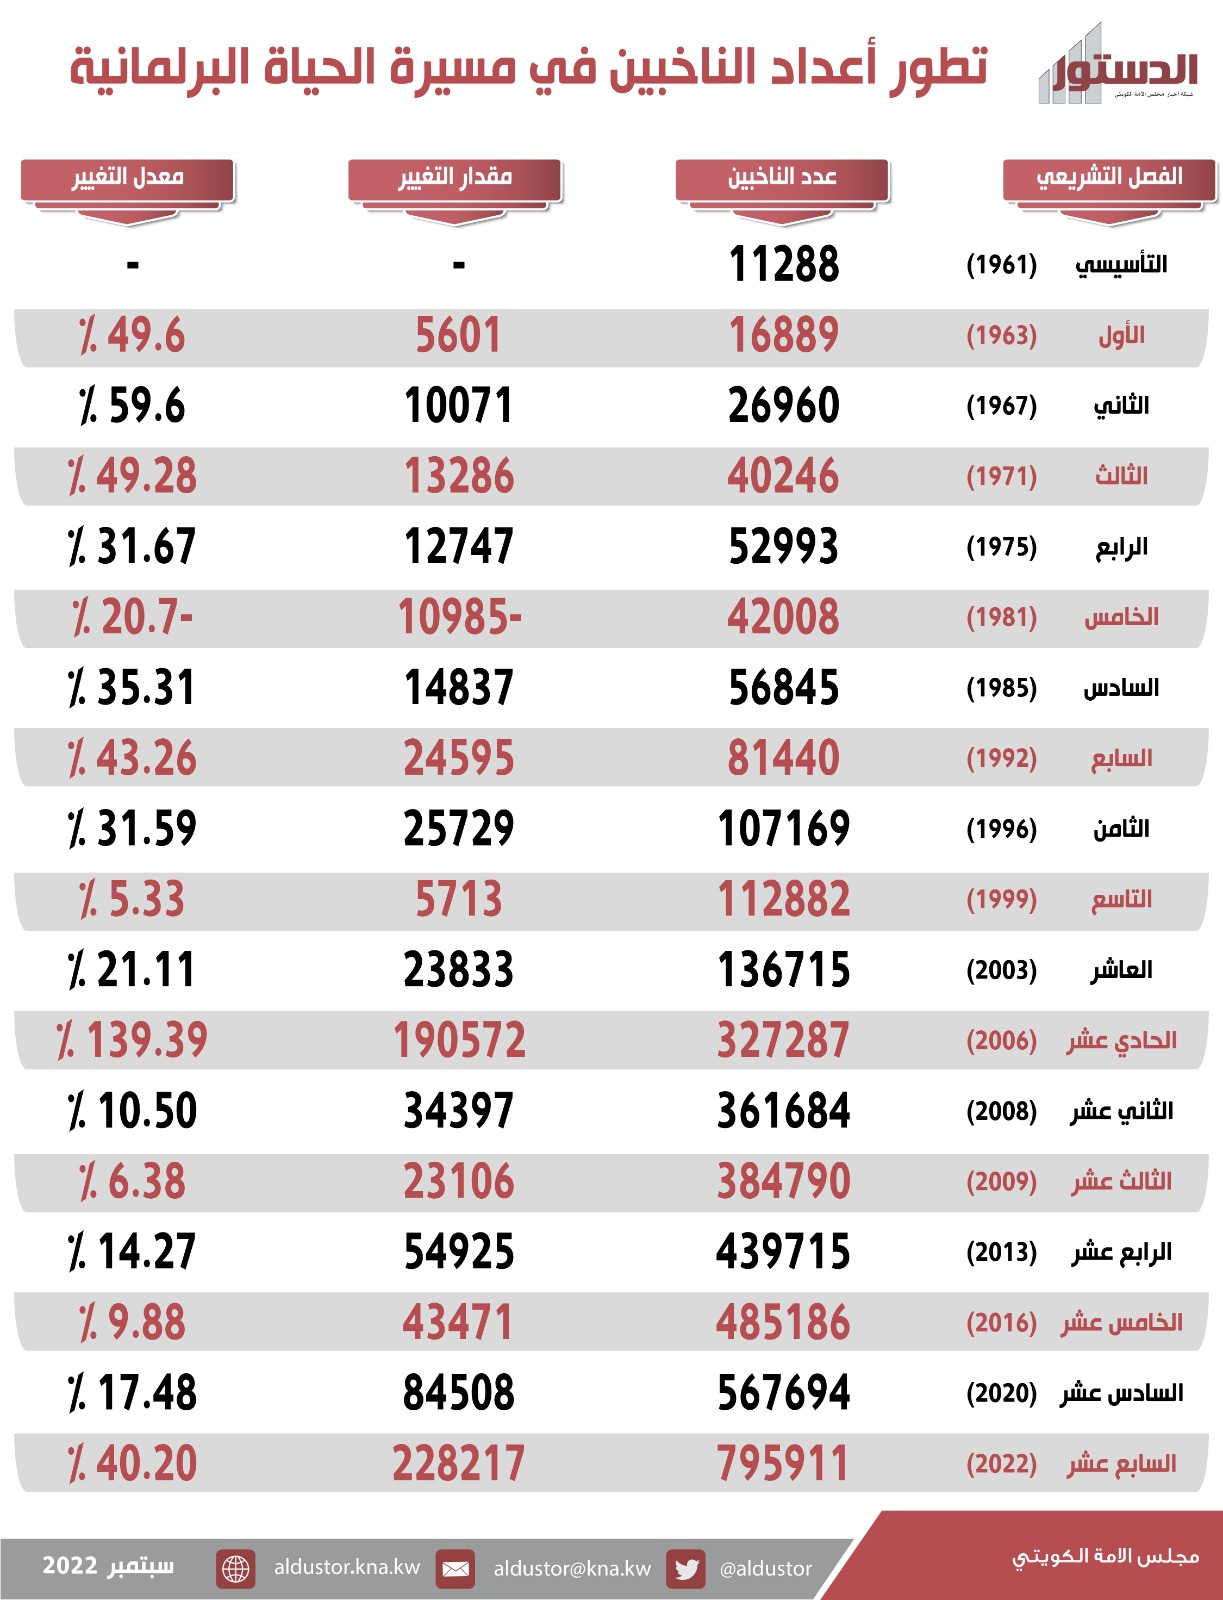  784623 ناخبا وناخبة زيادة في أعداد الناخبين من المجلس التأسيسي حتى انتخابات 2022